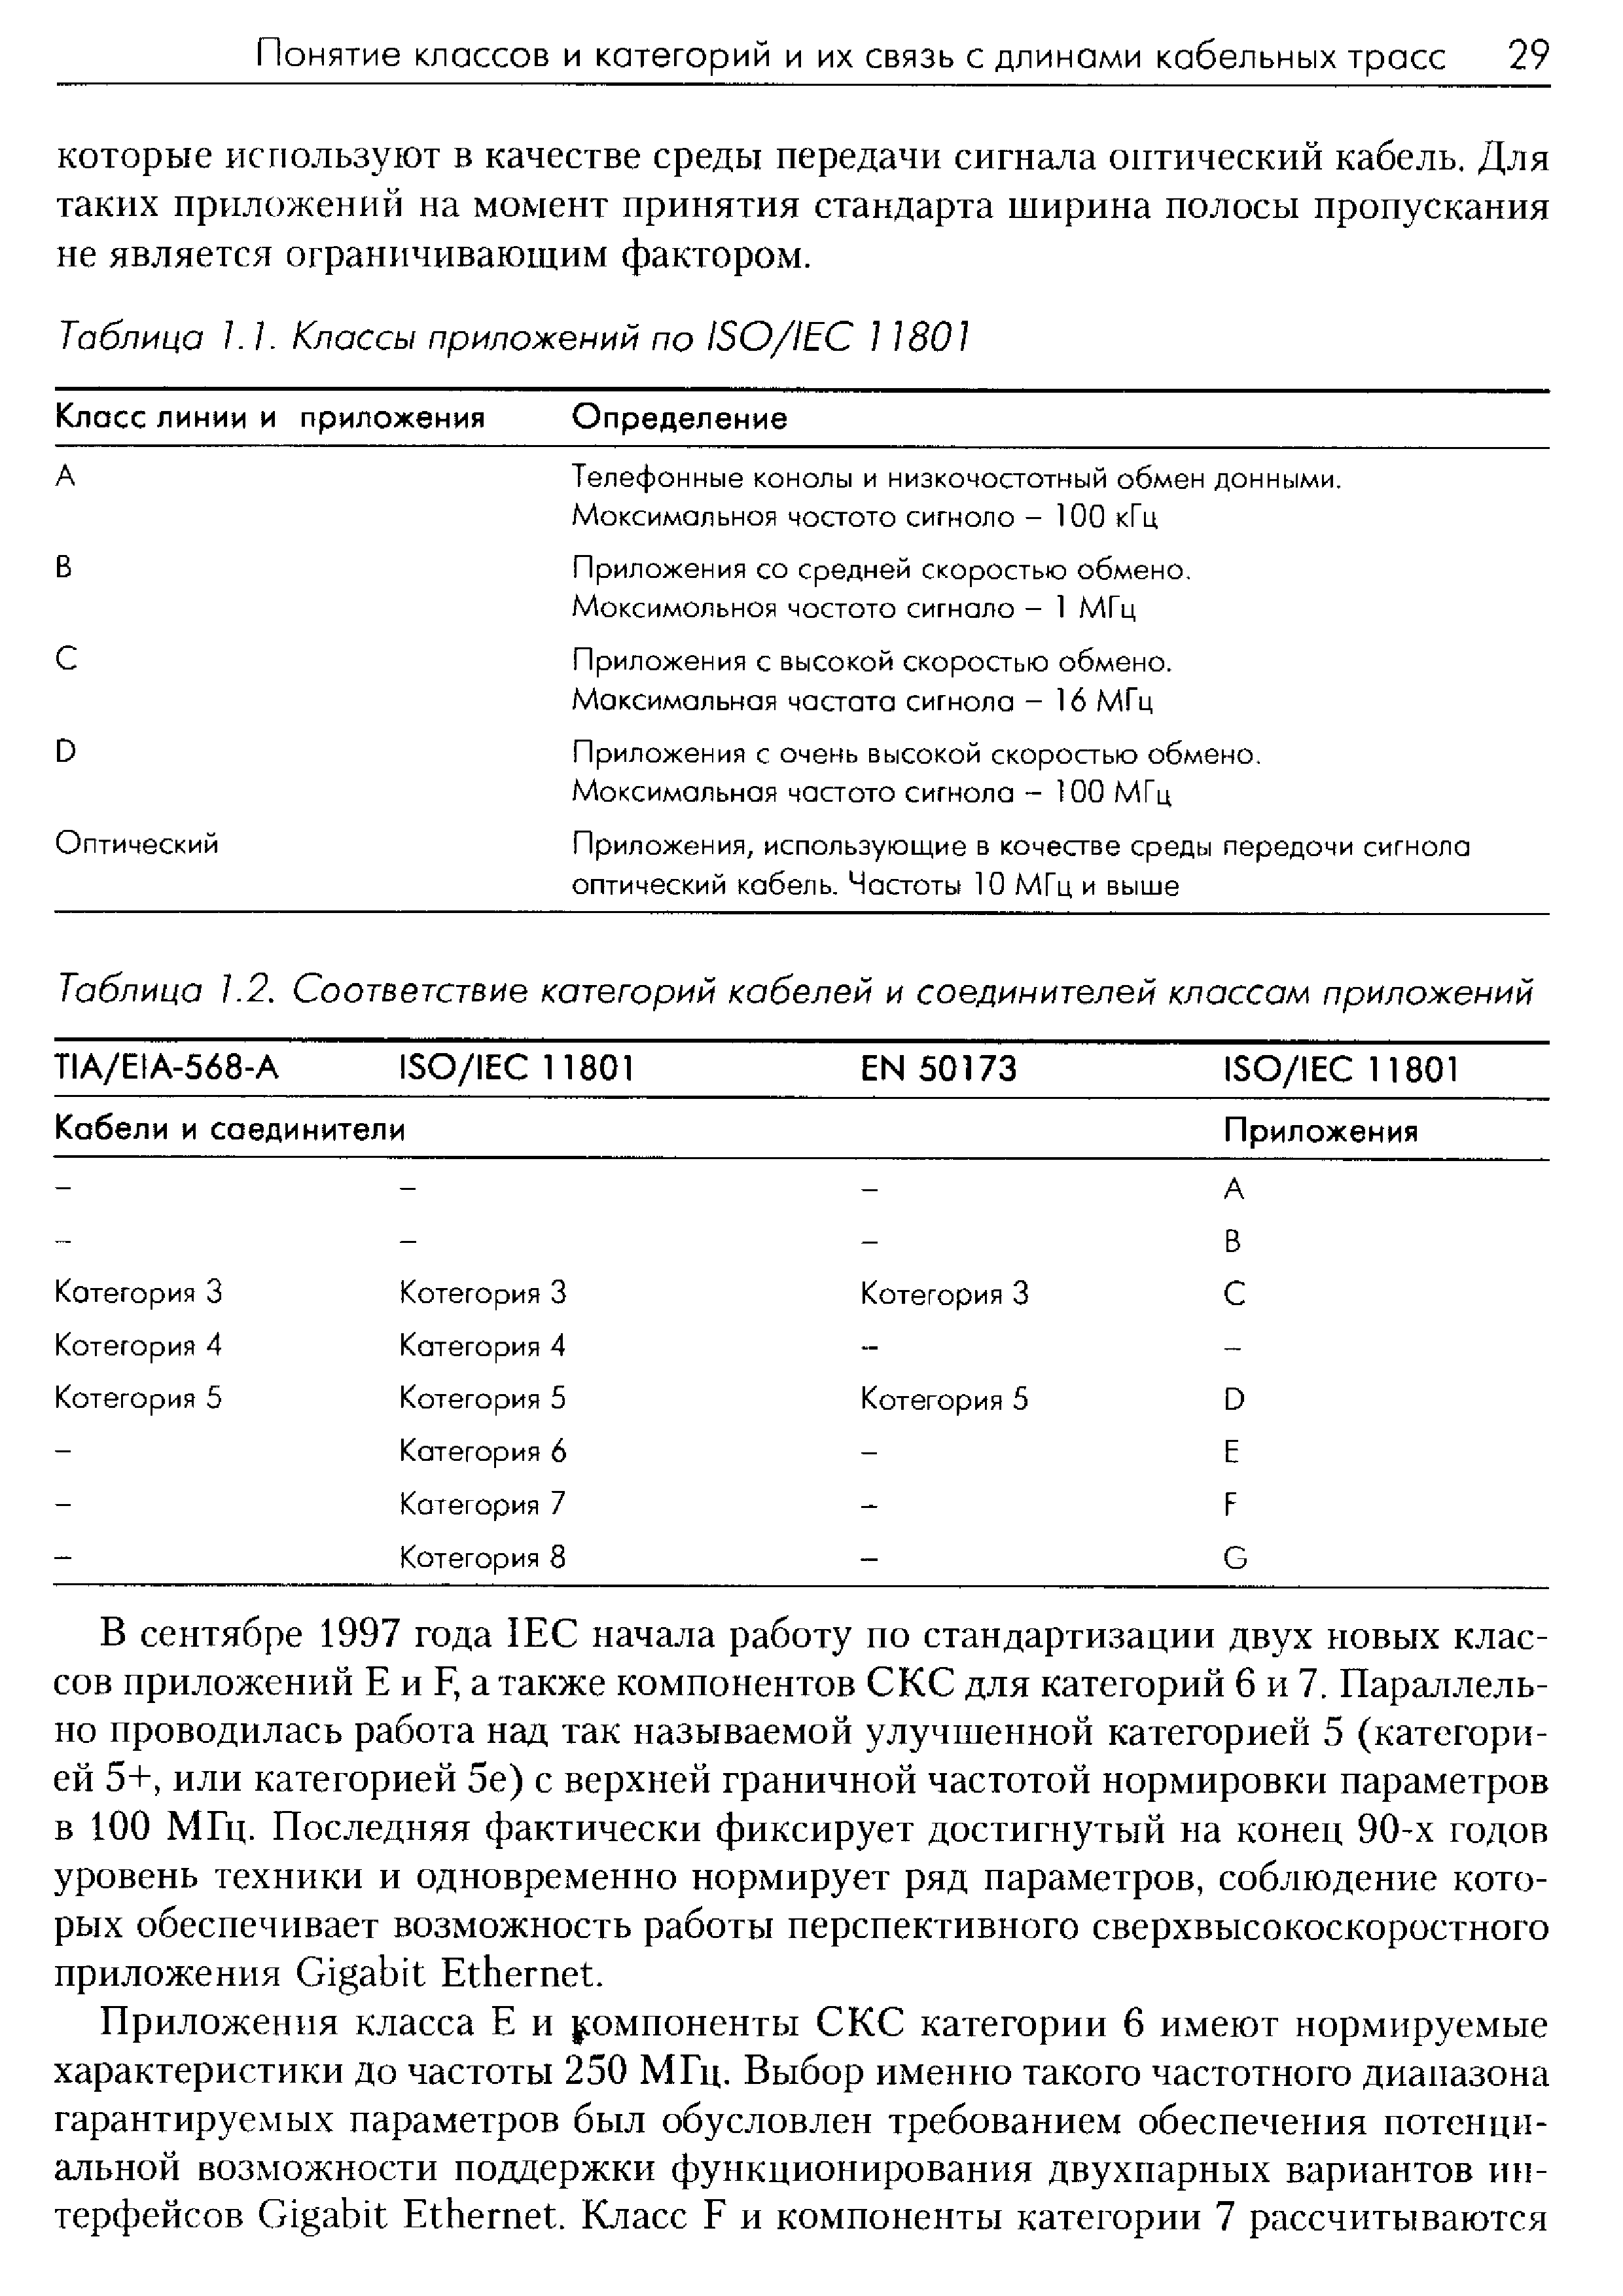 В сентябре 1997 года IE начала работу по стандартизации двух новых классов приложений Е и F, а также компонентов СКС для категорий 6 и 7. Параллельно проводилась работа над так называемой улучшенной категорией 5 (категорией 5+, или категорией 5е) с верхней граничной частотой нормировки параметров в 100 МГц. Последняя фактически фиксирует достигнутый на конец 90-х годов уровень техники и одновременно нормирует ряд параметров, соблюдение которых обеспечивает возможность работы перспективного сверхвысокоскоростного приложения Gigabit Ethernet.